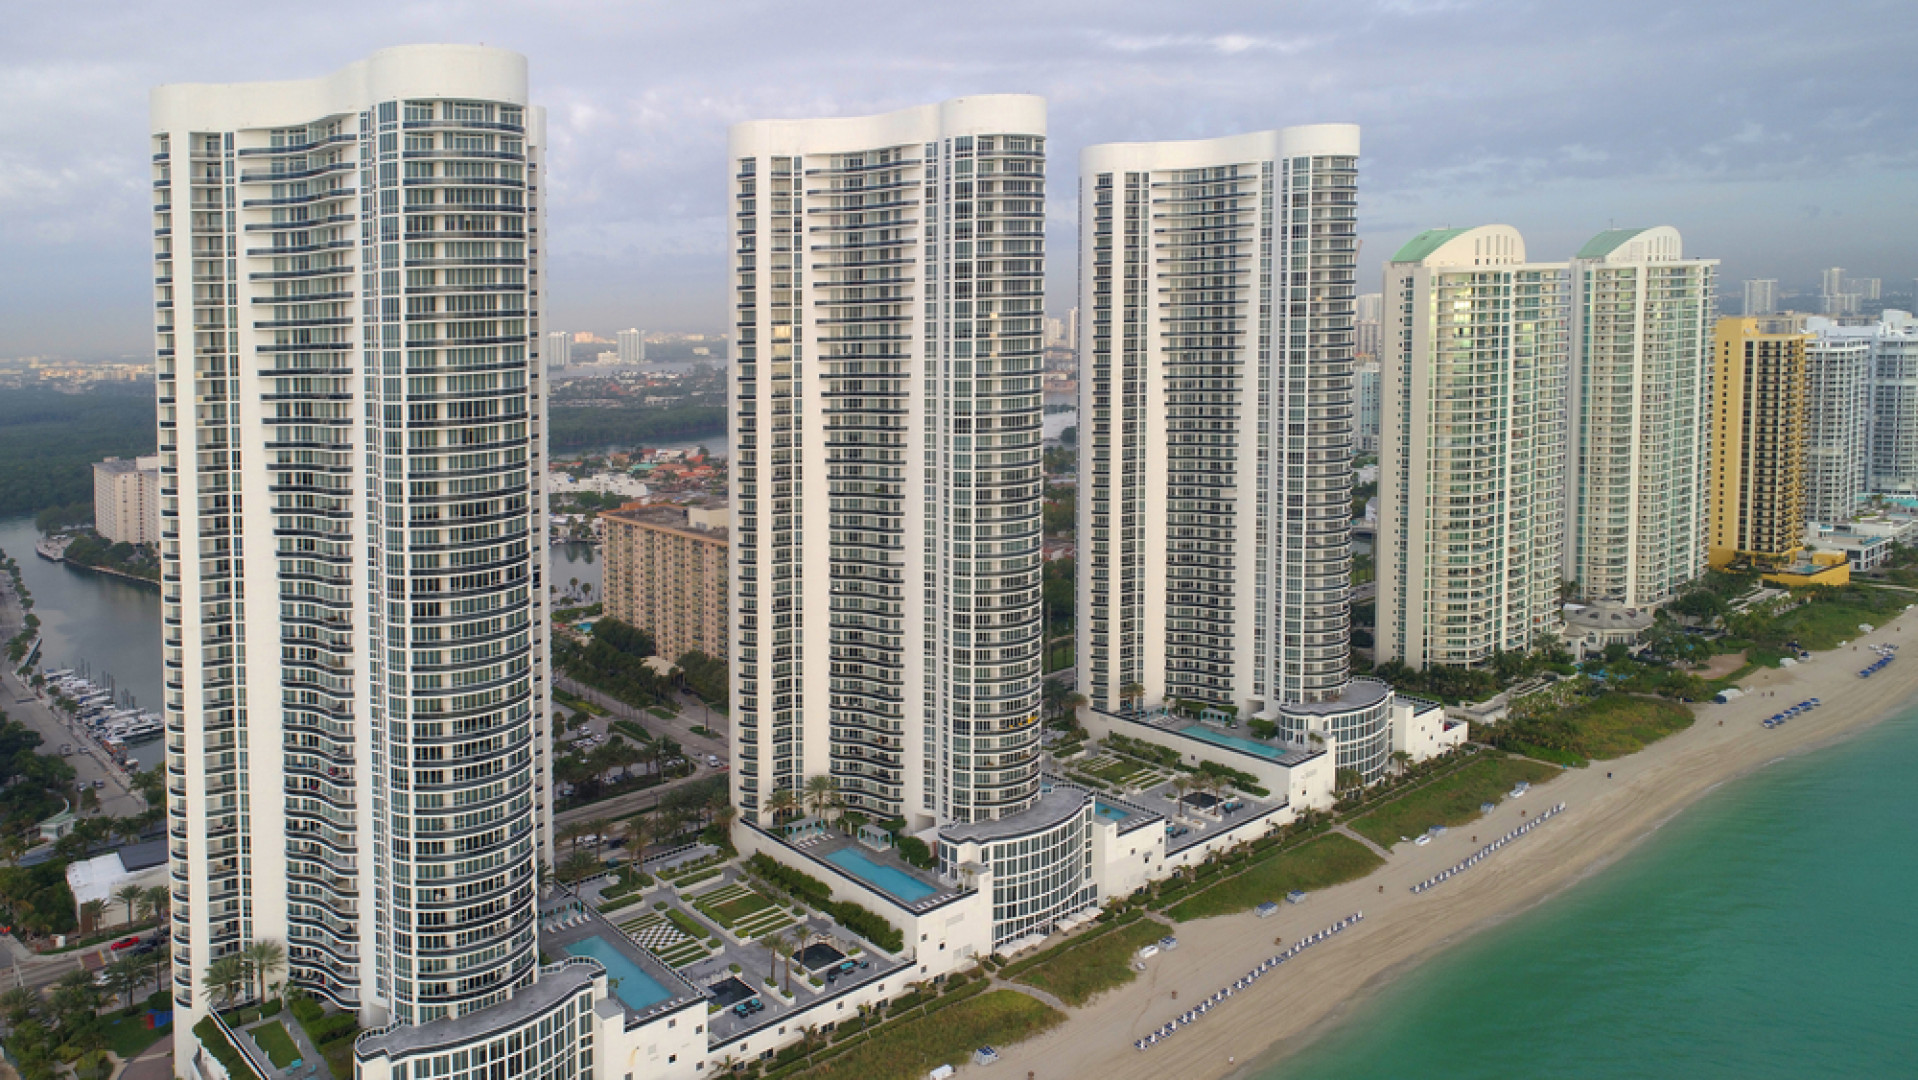 Trzy 160-metrowe wieże zlokalizowane w kurorcie Sunny Isles Beach na Florydzie pełnią funkcję mieszkalną i hotelową, fot. shutterstock